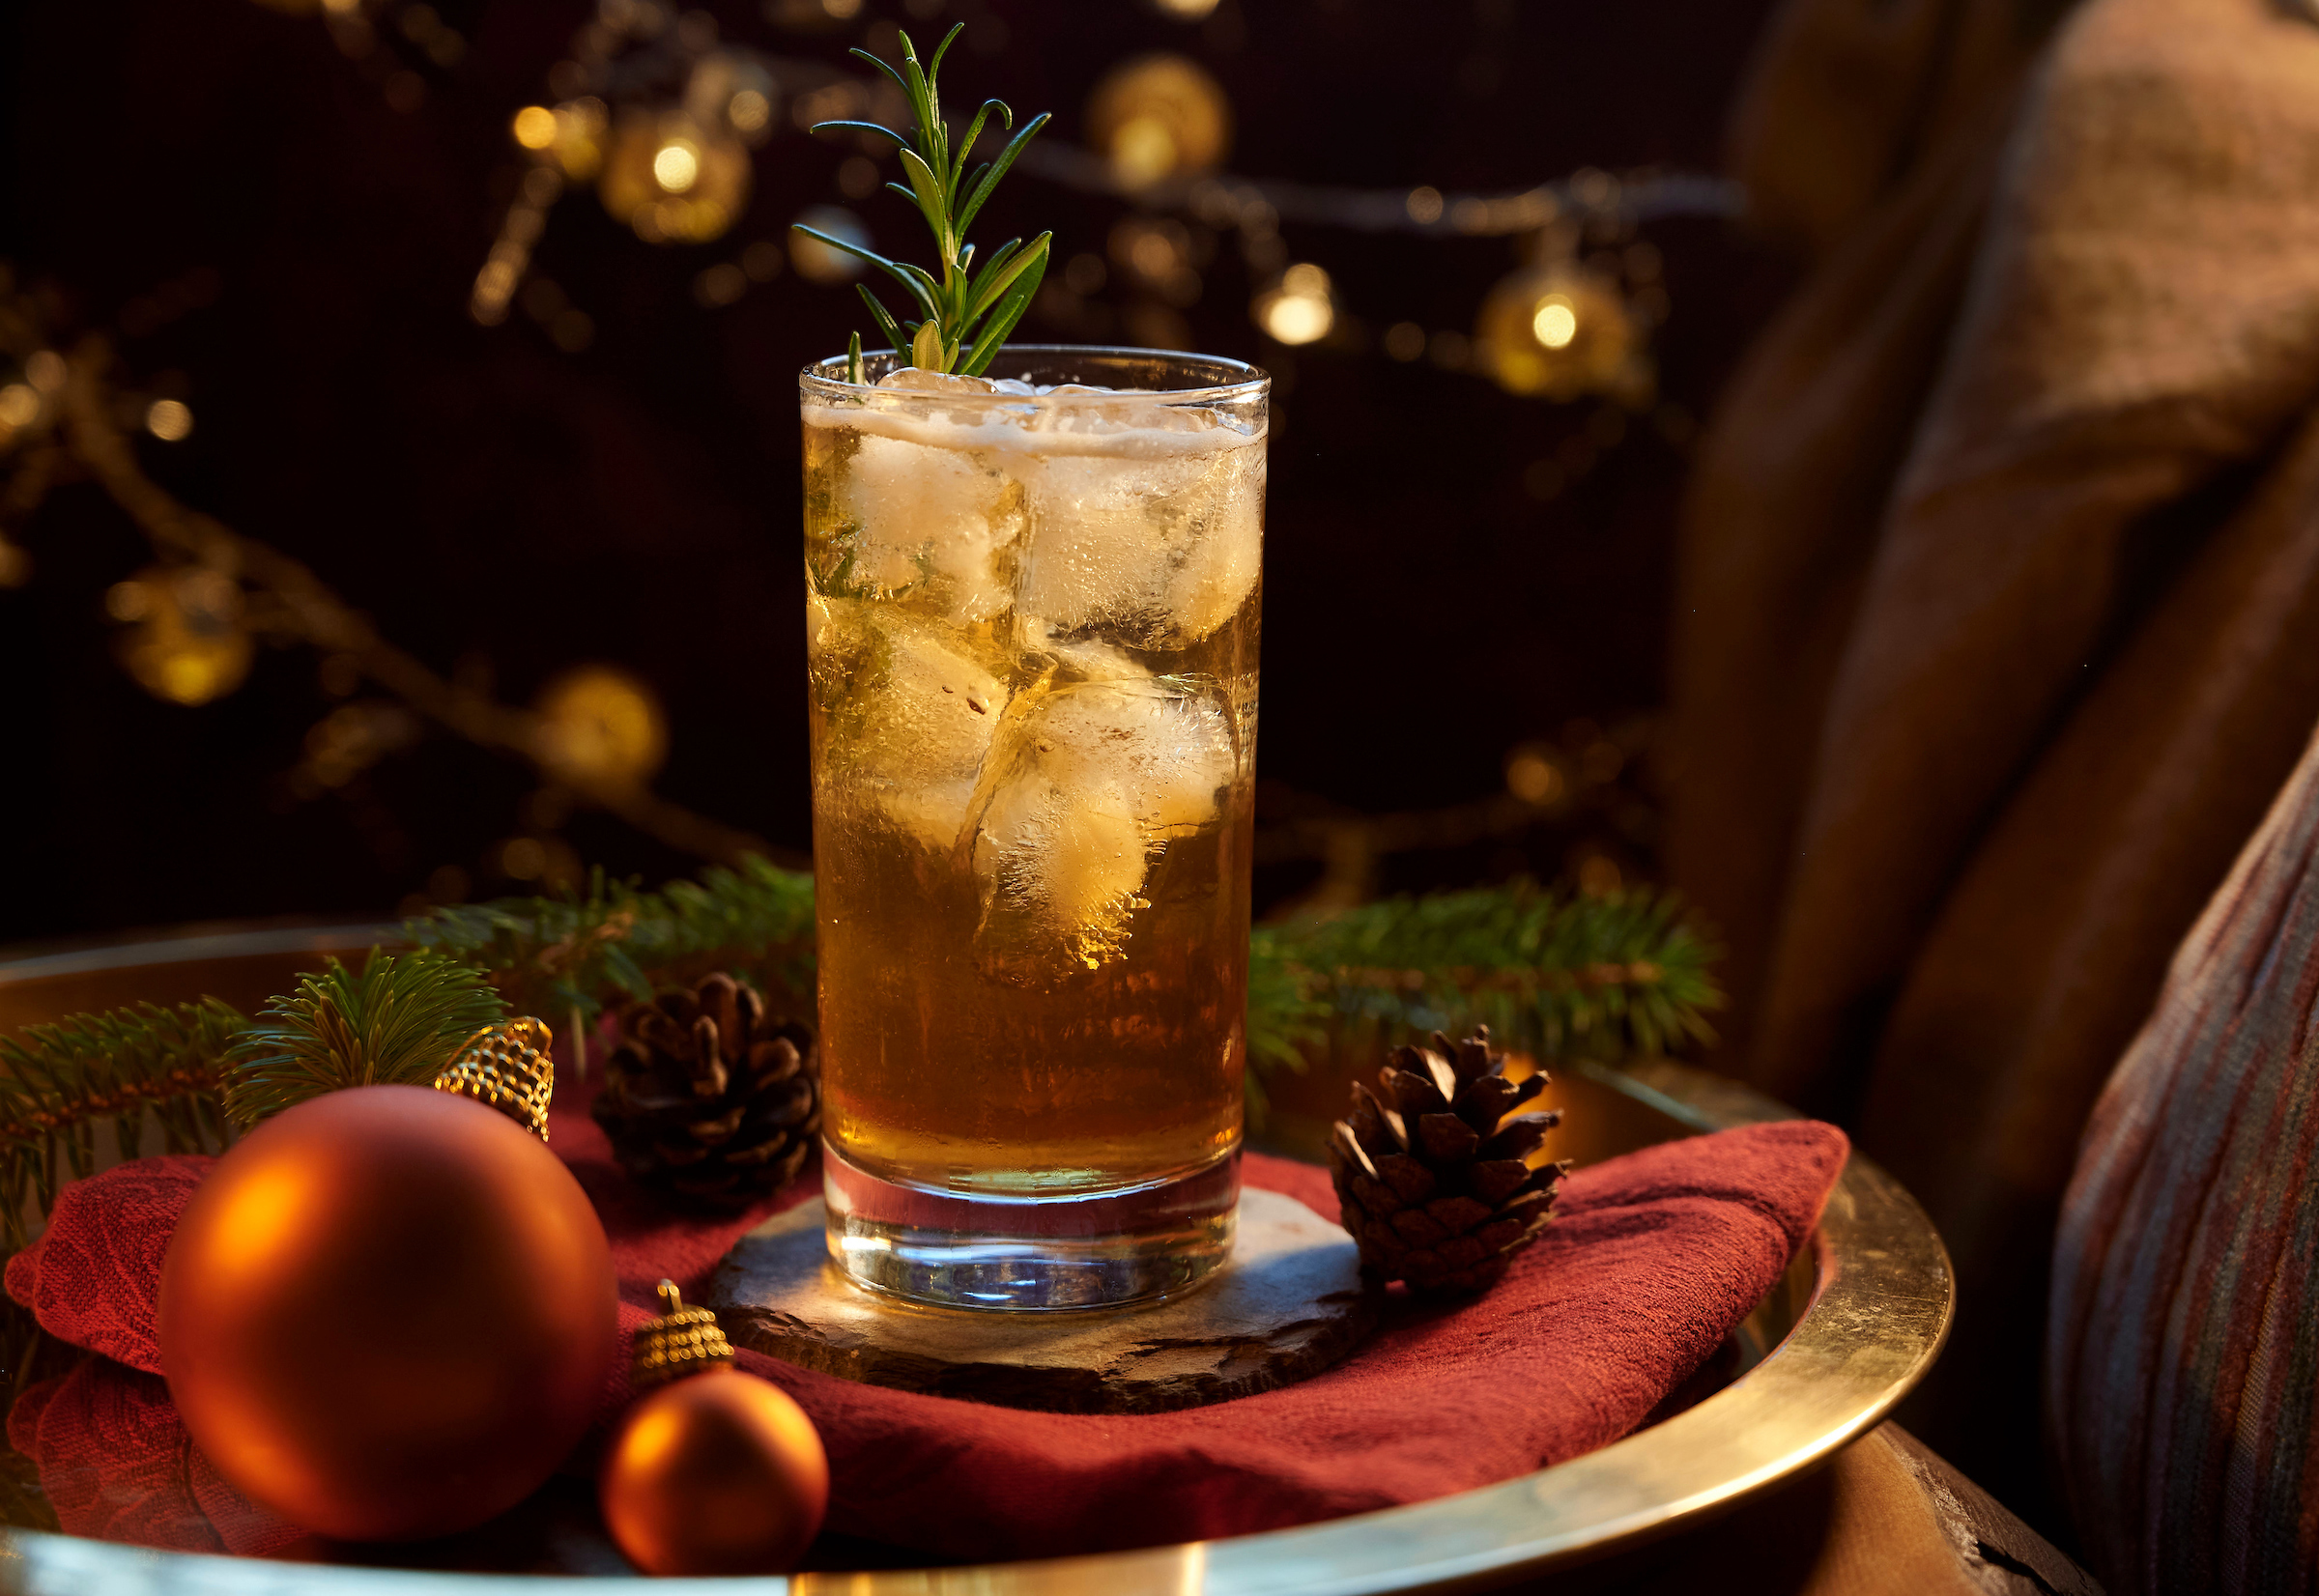 Bardinet Christmas 2020 - Food and Drink Scotland